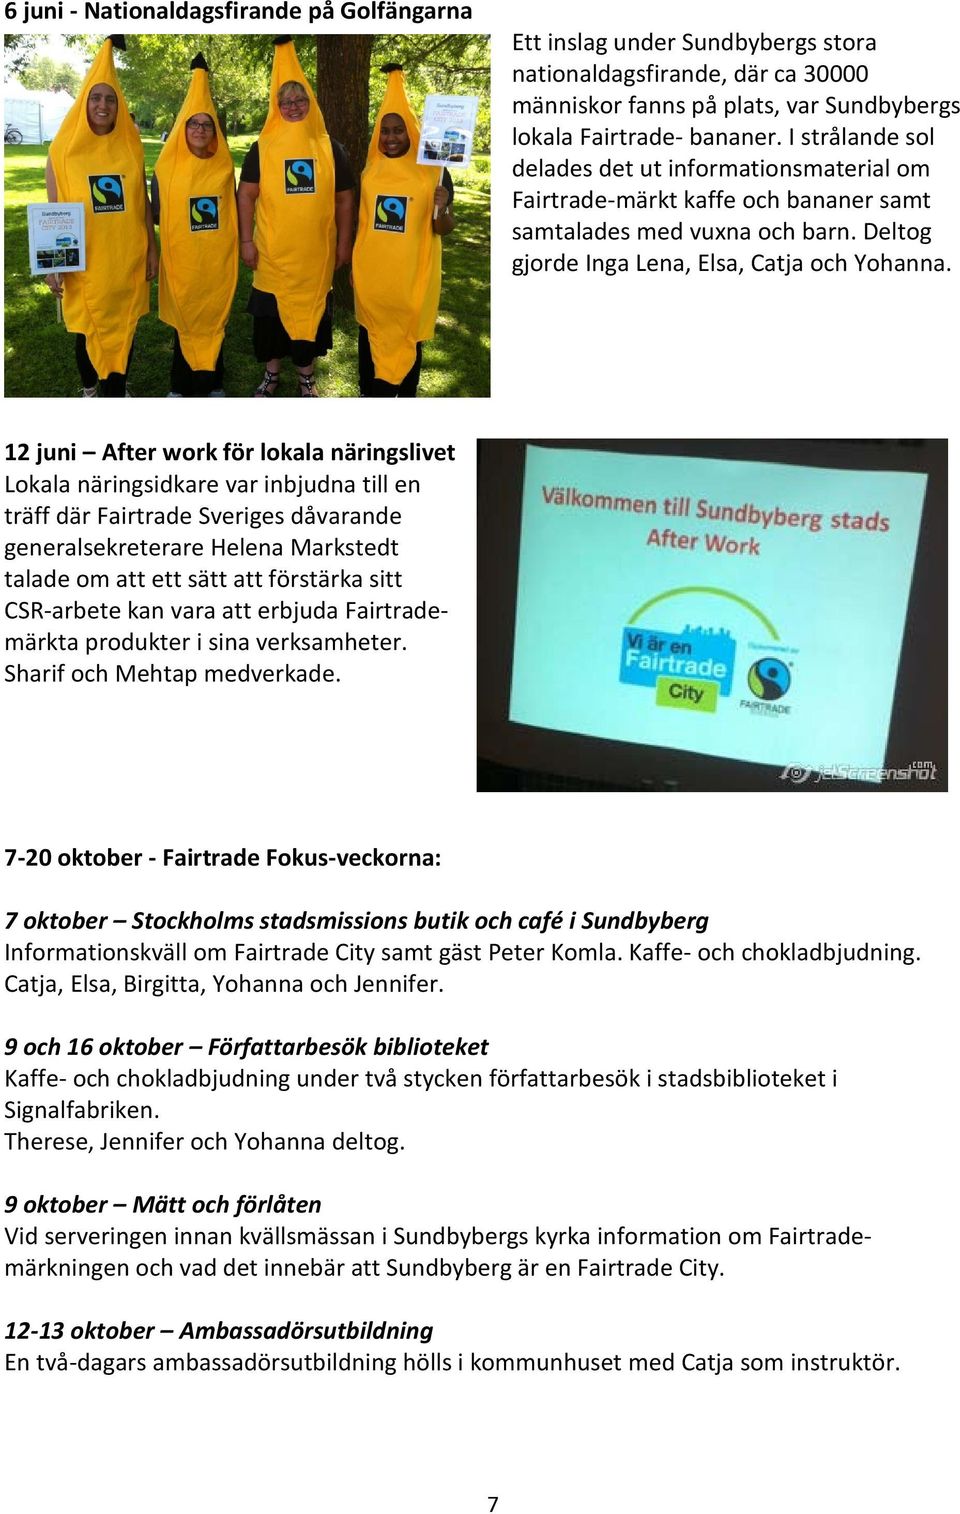 12 juni After work för lokala näringslivet Lokala näringsidkare var inbjudna till en träff där Fairtrade Sveriges dåvarande generalsekreterare Helena Markstedt talade om att ett sätt att förstärka